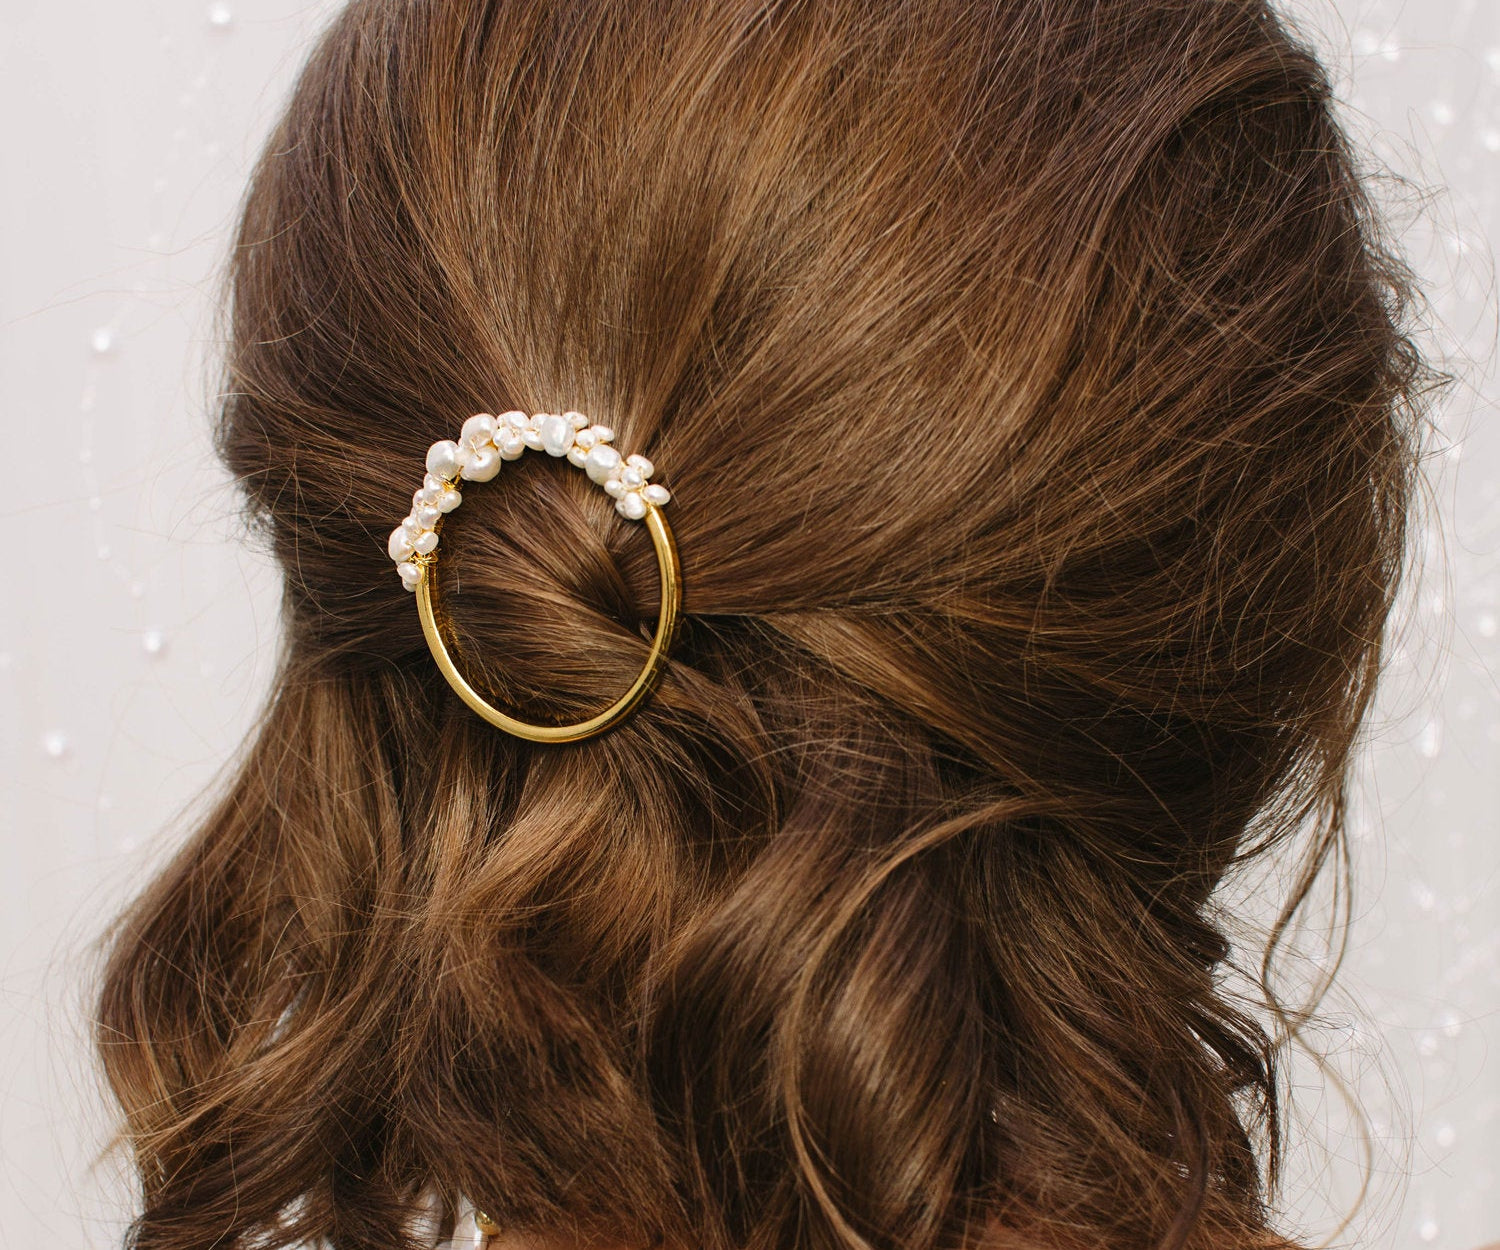 MAGNA Half Haarspange mit echten Perlen in Gold Brautschmuck Brautfrisuren